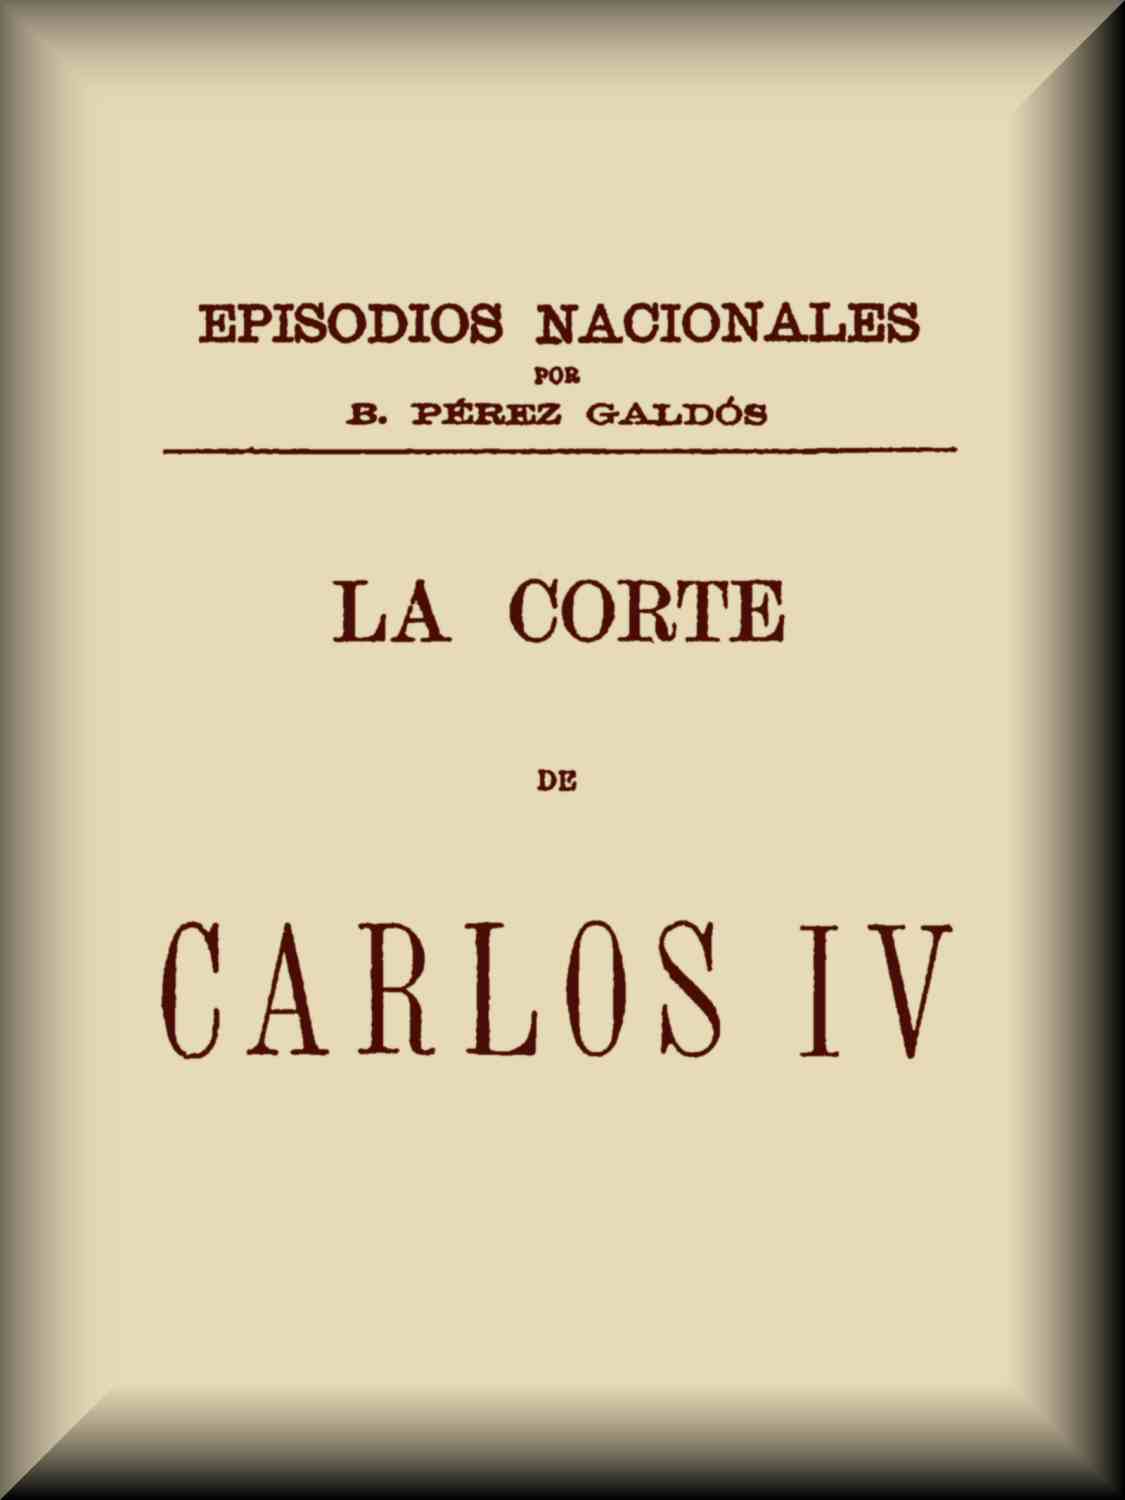 La corte de Carlos IV, by Benito Pérez Galdós—A Project Gutenberg eBook imagen